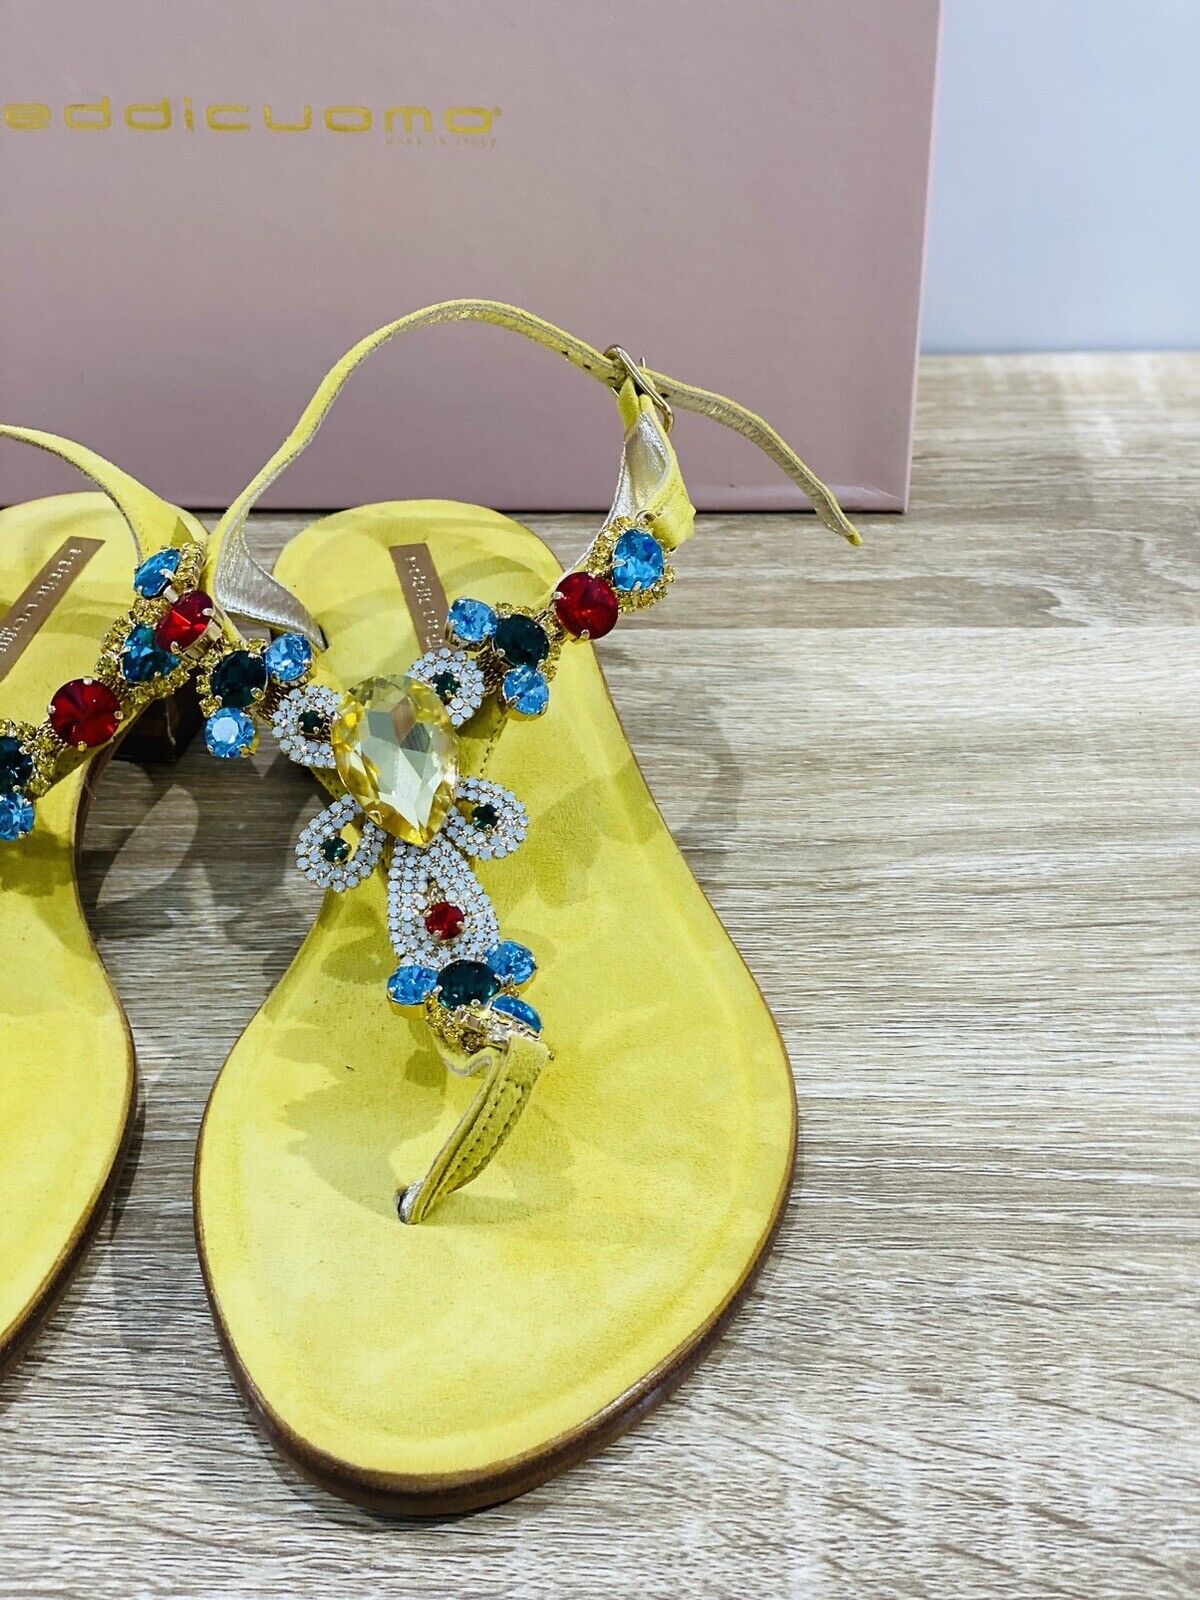 Eddi Cuomo Luxury Sandals Donna Giallo Fatti A Mano Totally Handmade 39